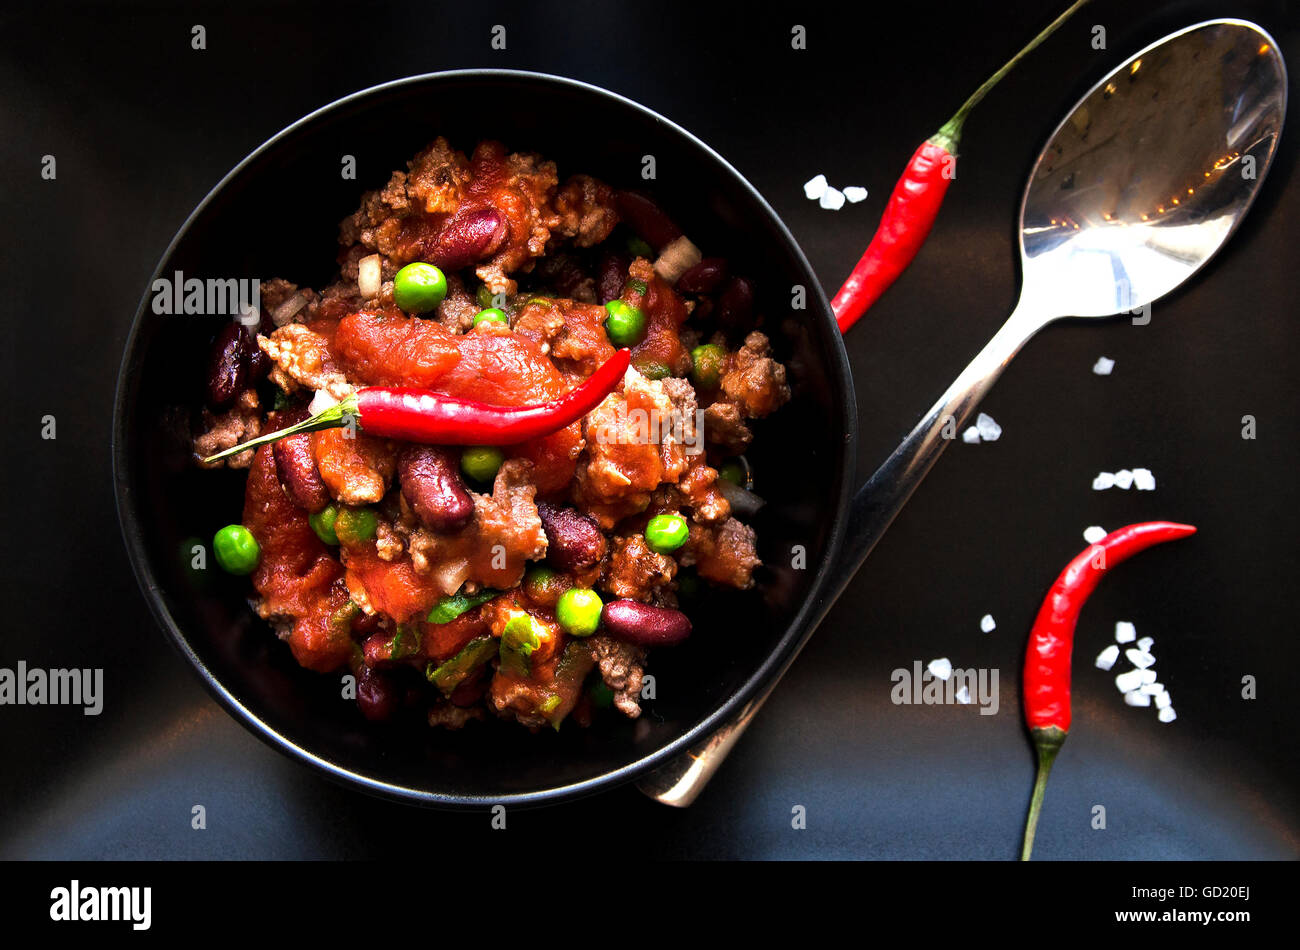 Mexicaine chili con carne, plaque noire haricots. Banque D'Images